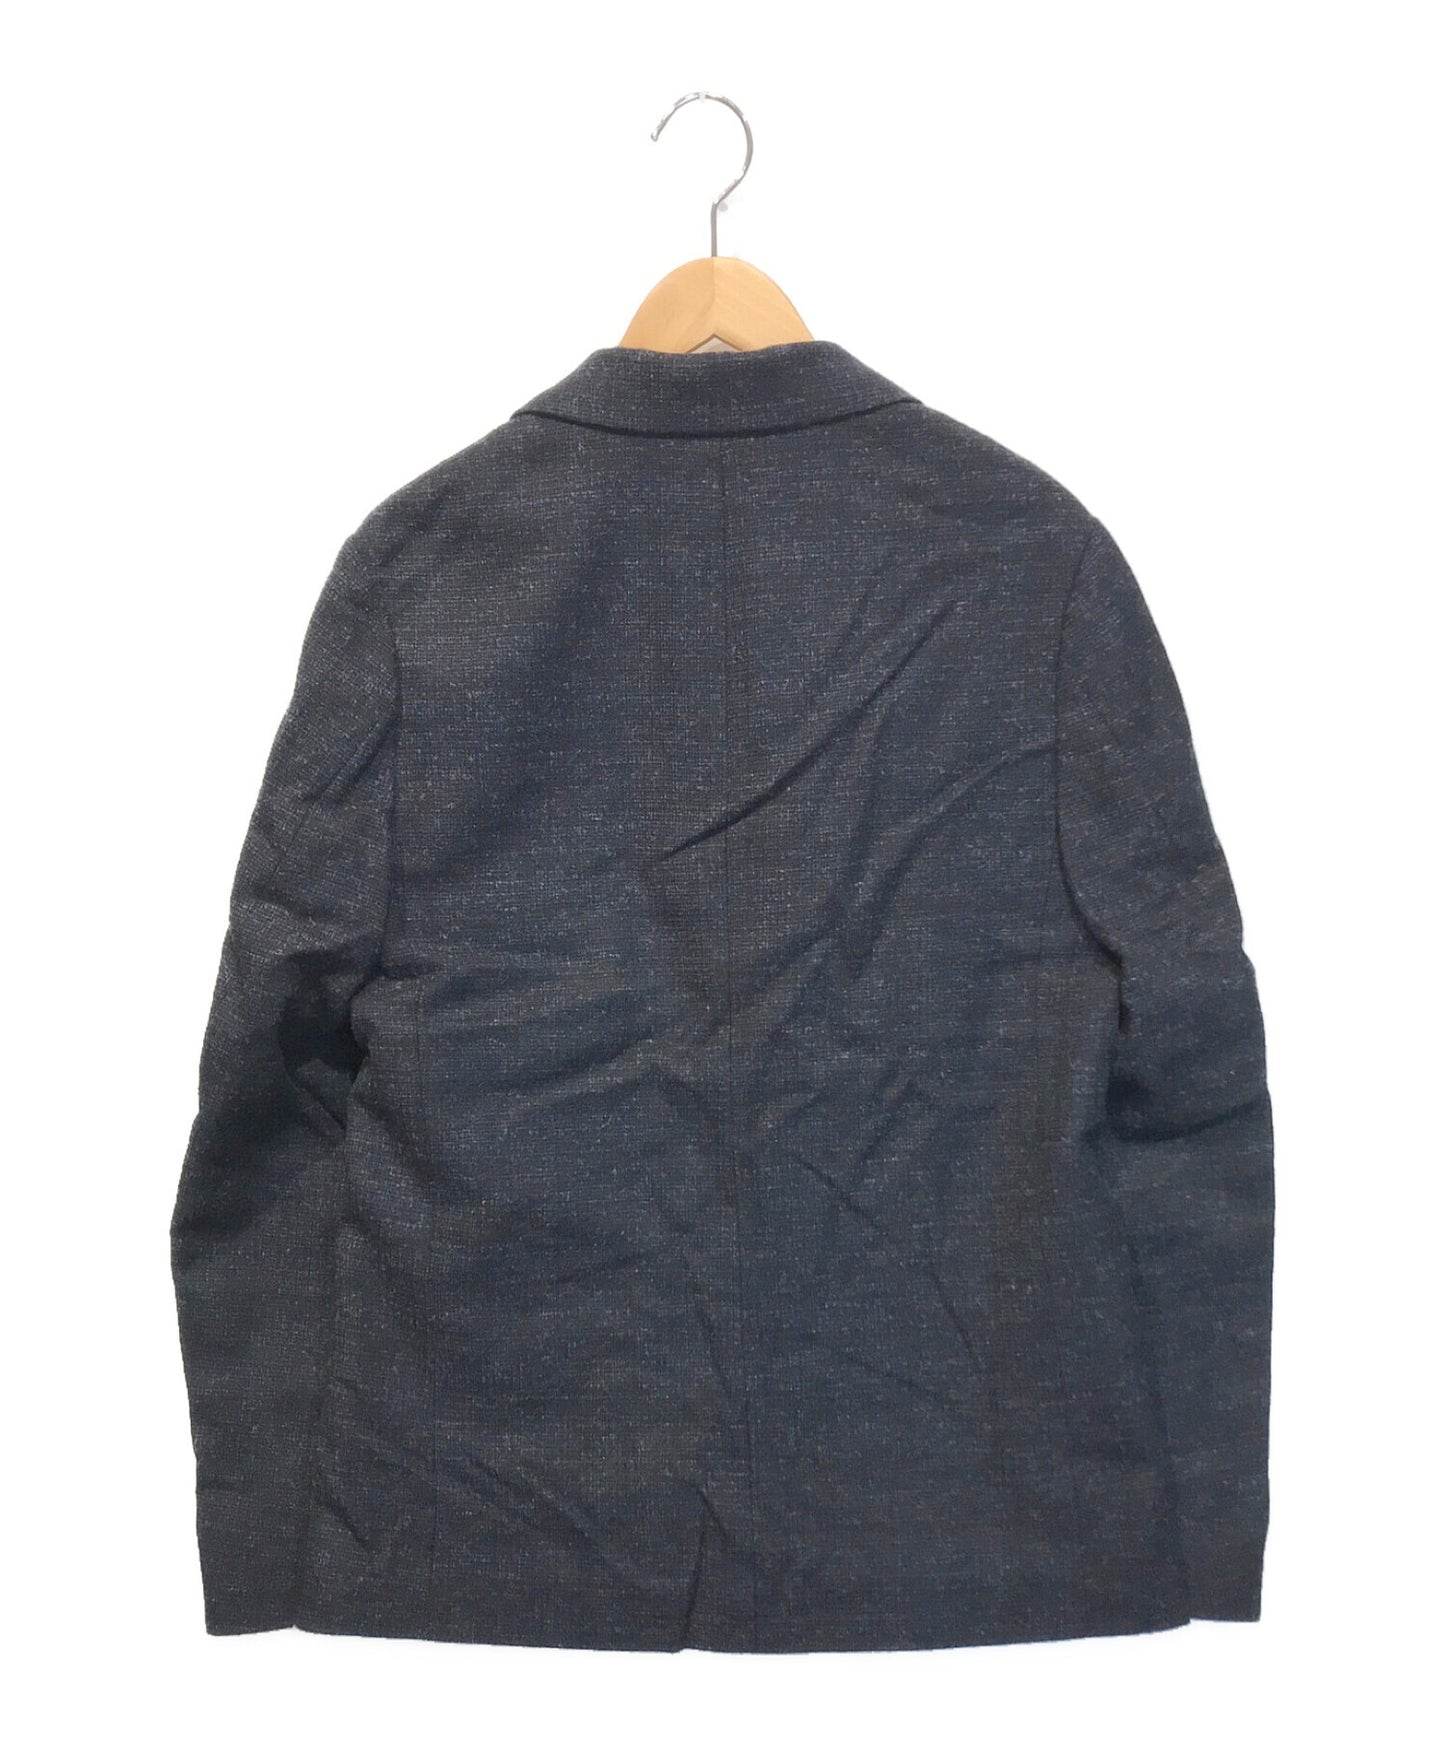 臥底羊毛量身定制的外套UCT4101-2